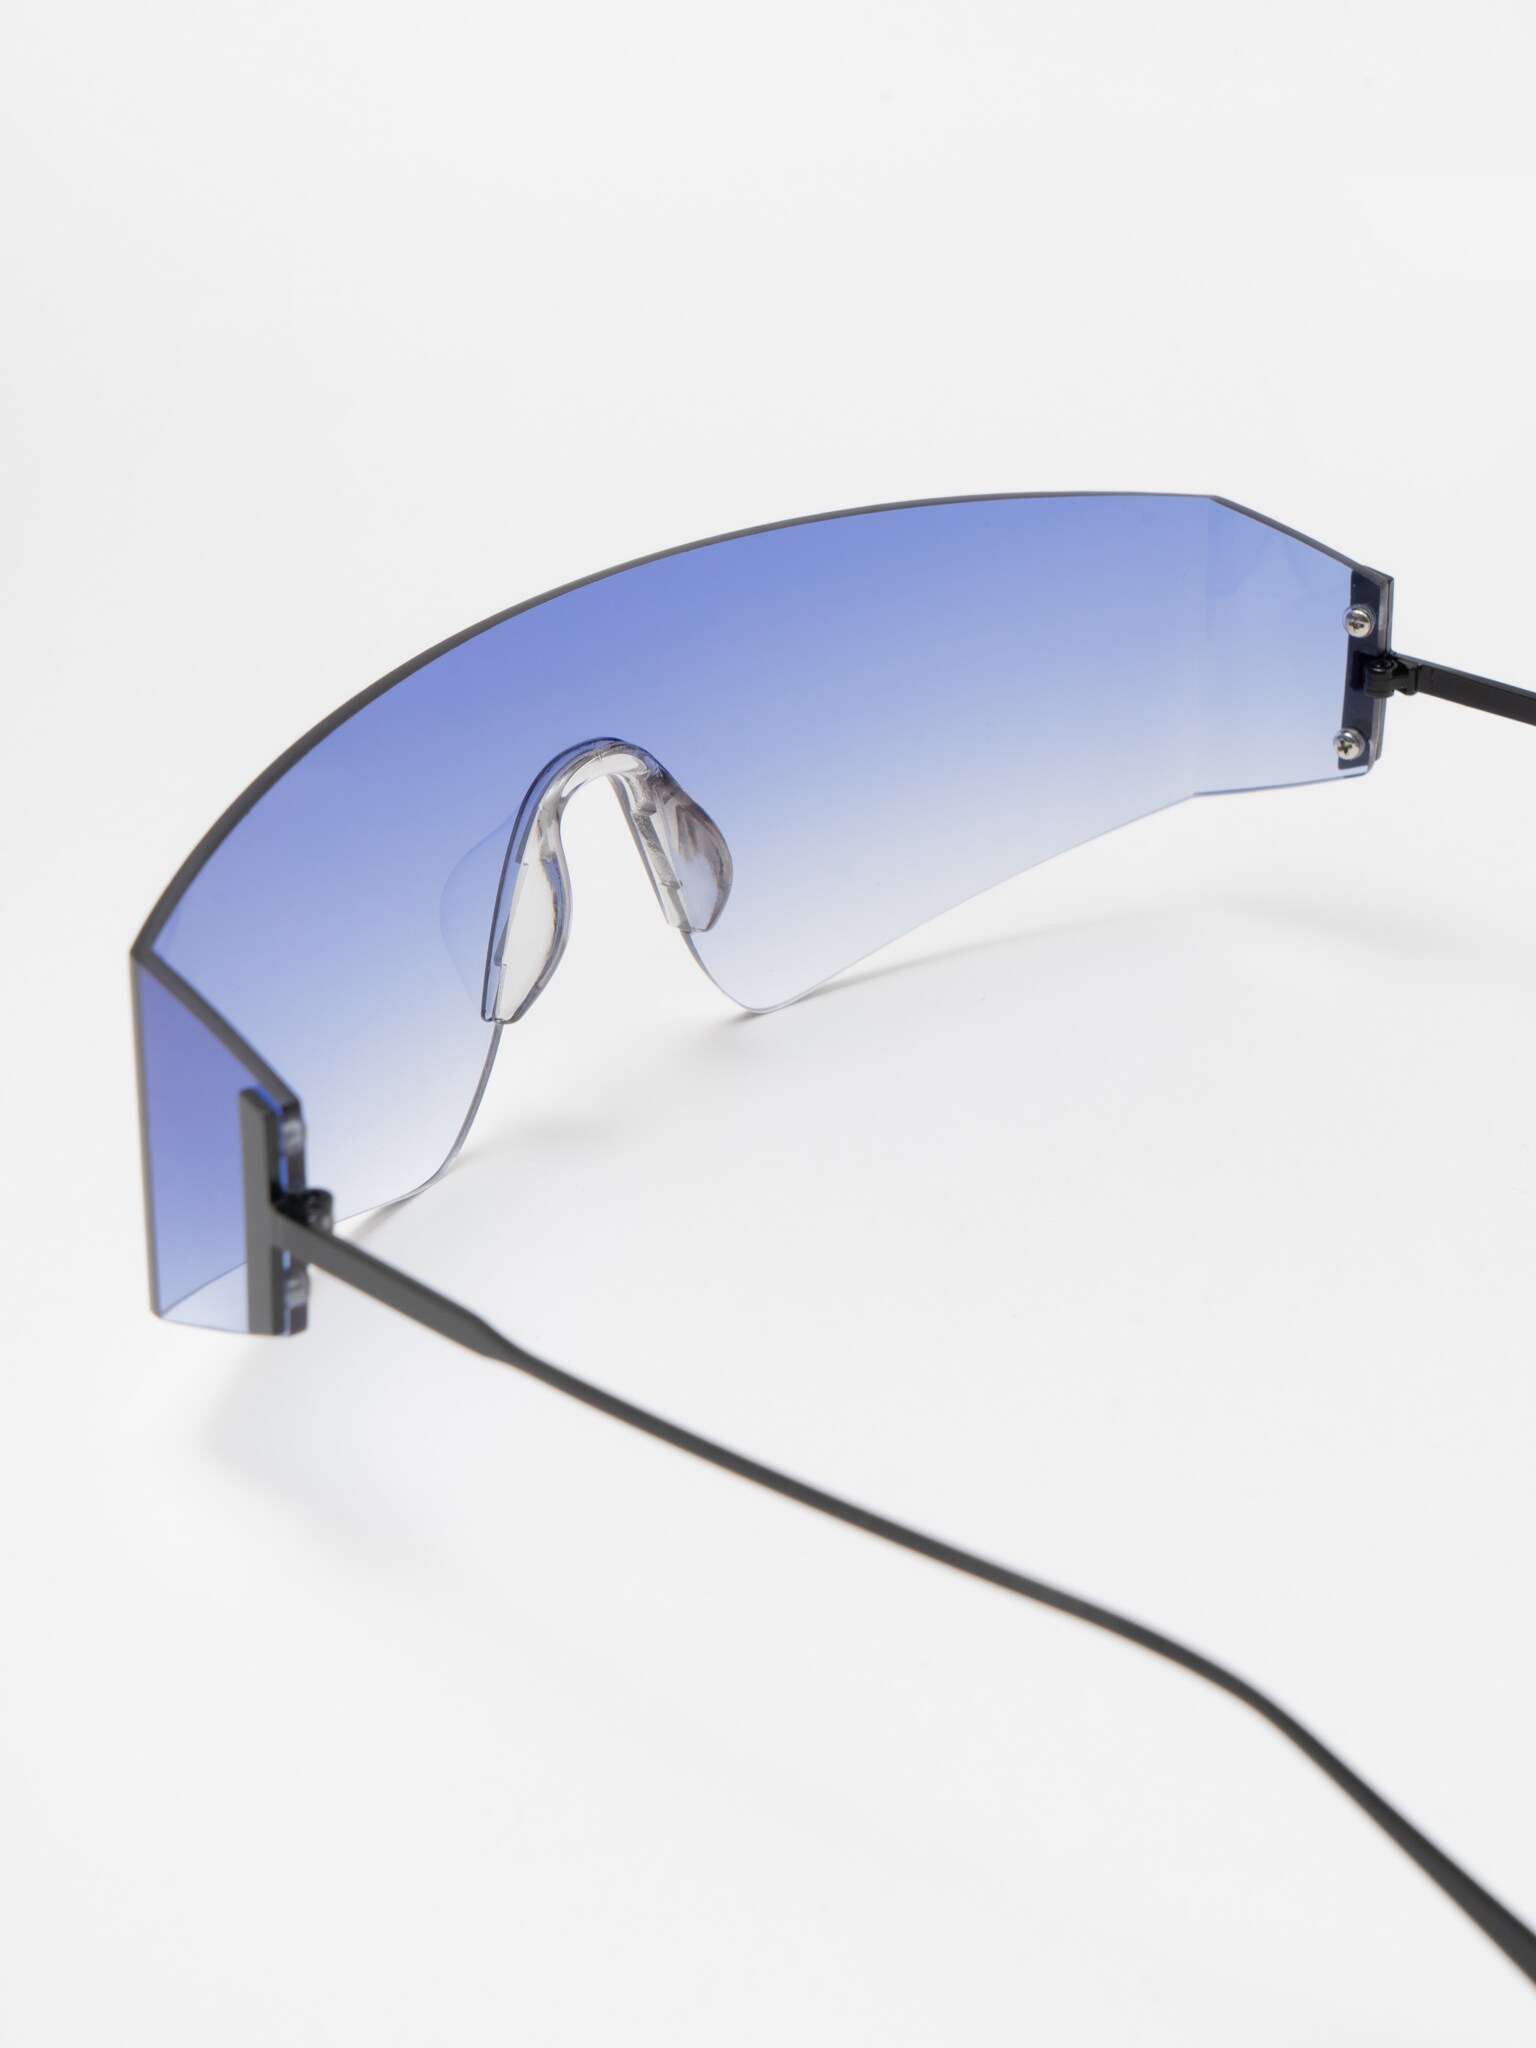 LICHI - Online fashion store :: Visor-style sunglasses